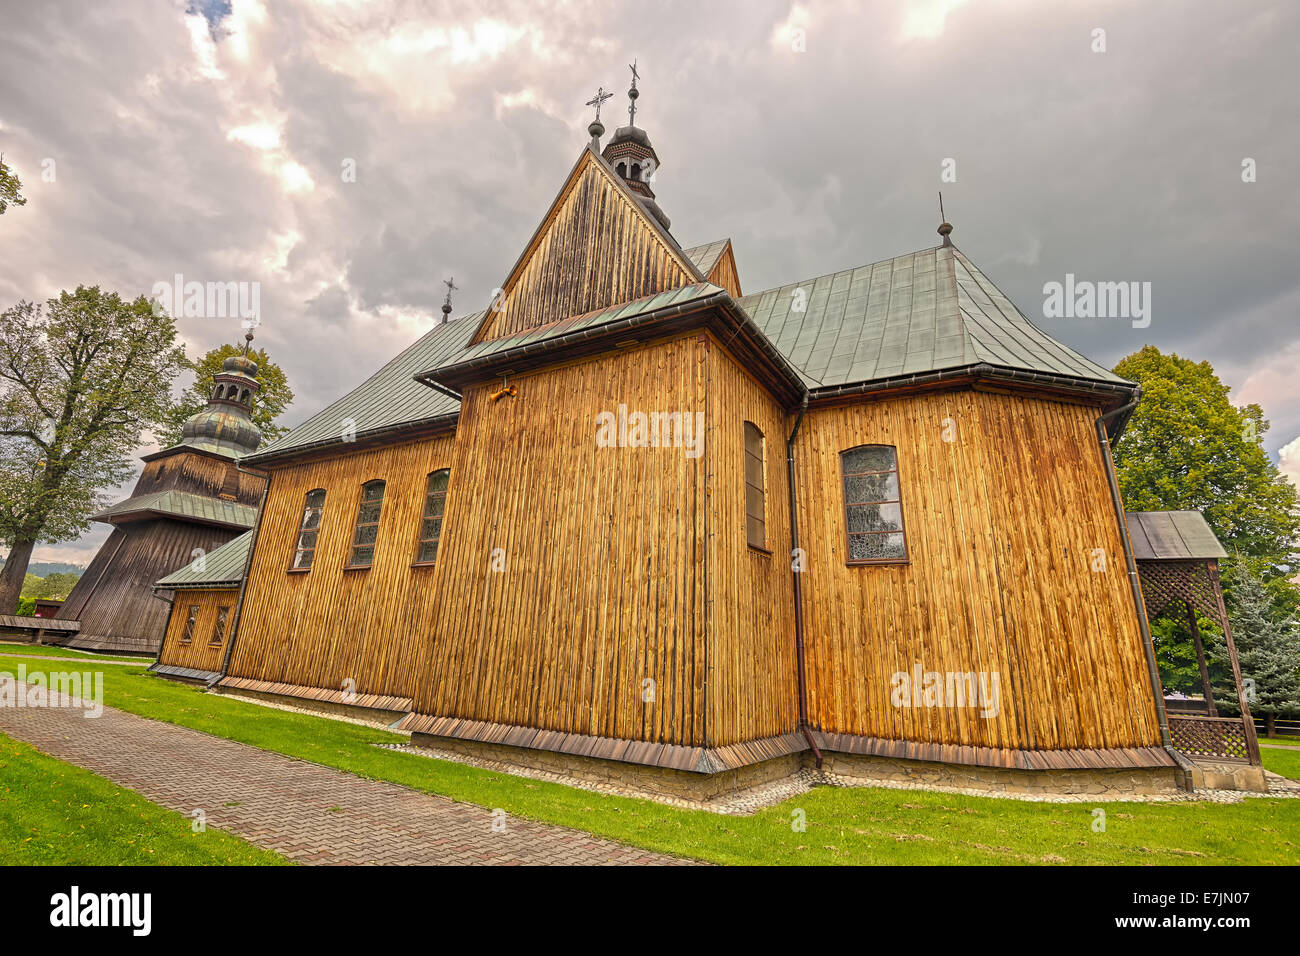 Legno bella chiesa parrocchiale della Immacolata Concezione in Spytkowice vicino a Cracovia, Nowy Targ County, Polonia. Immagine hdr, ampia Foto Stock